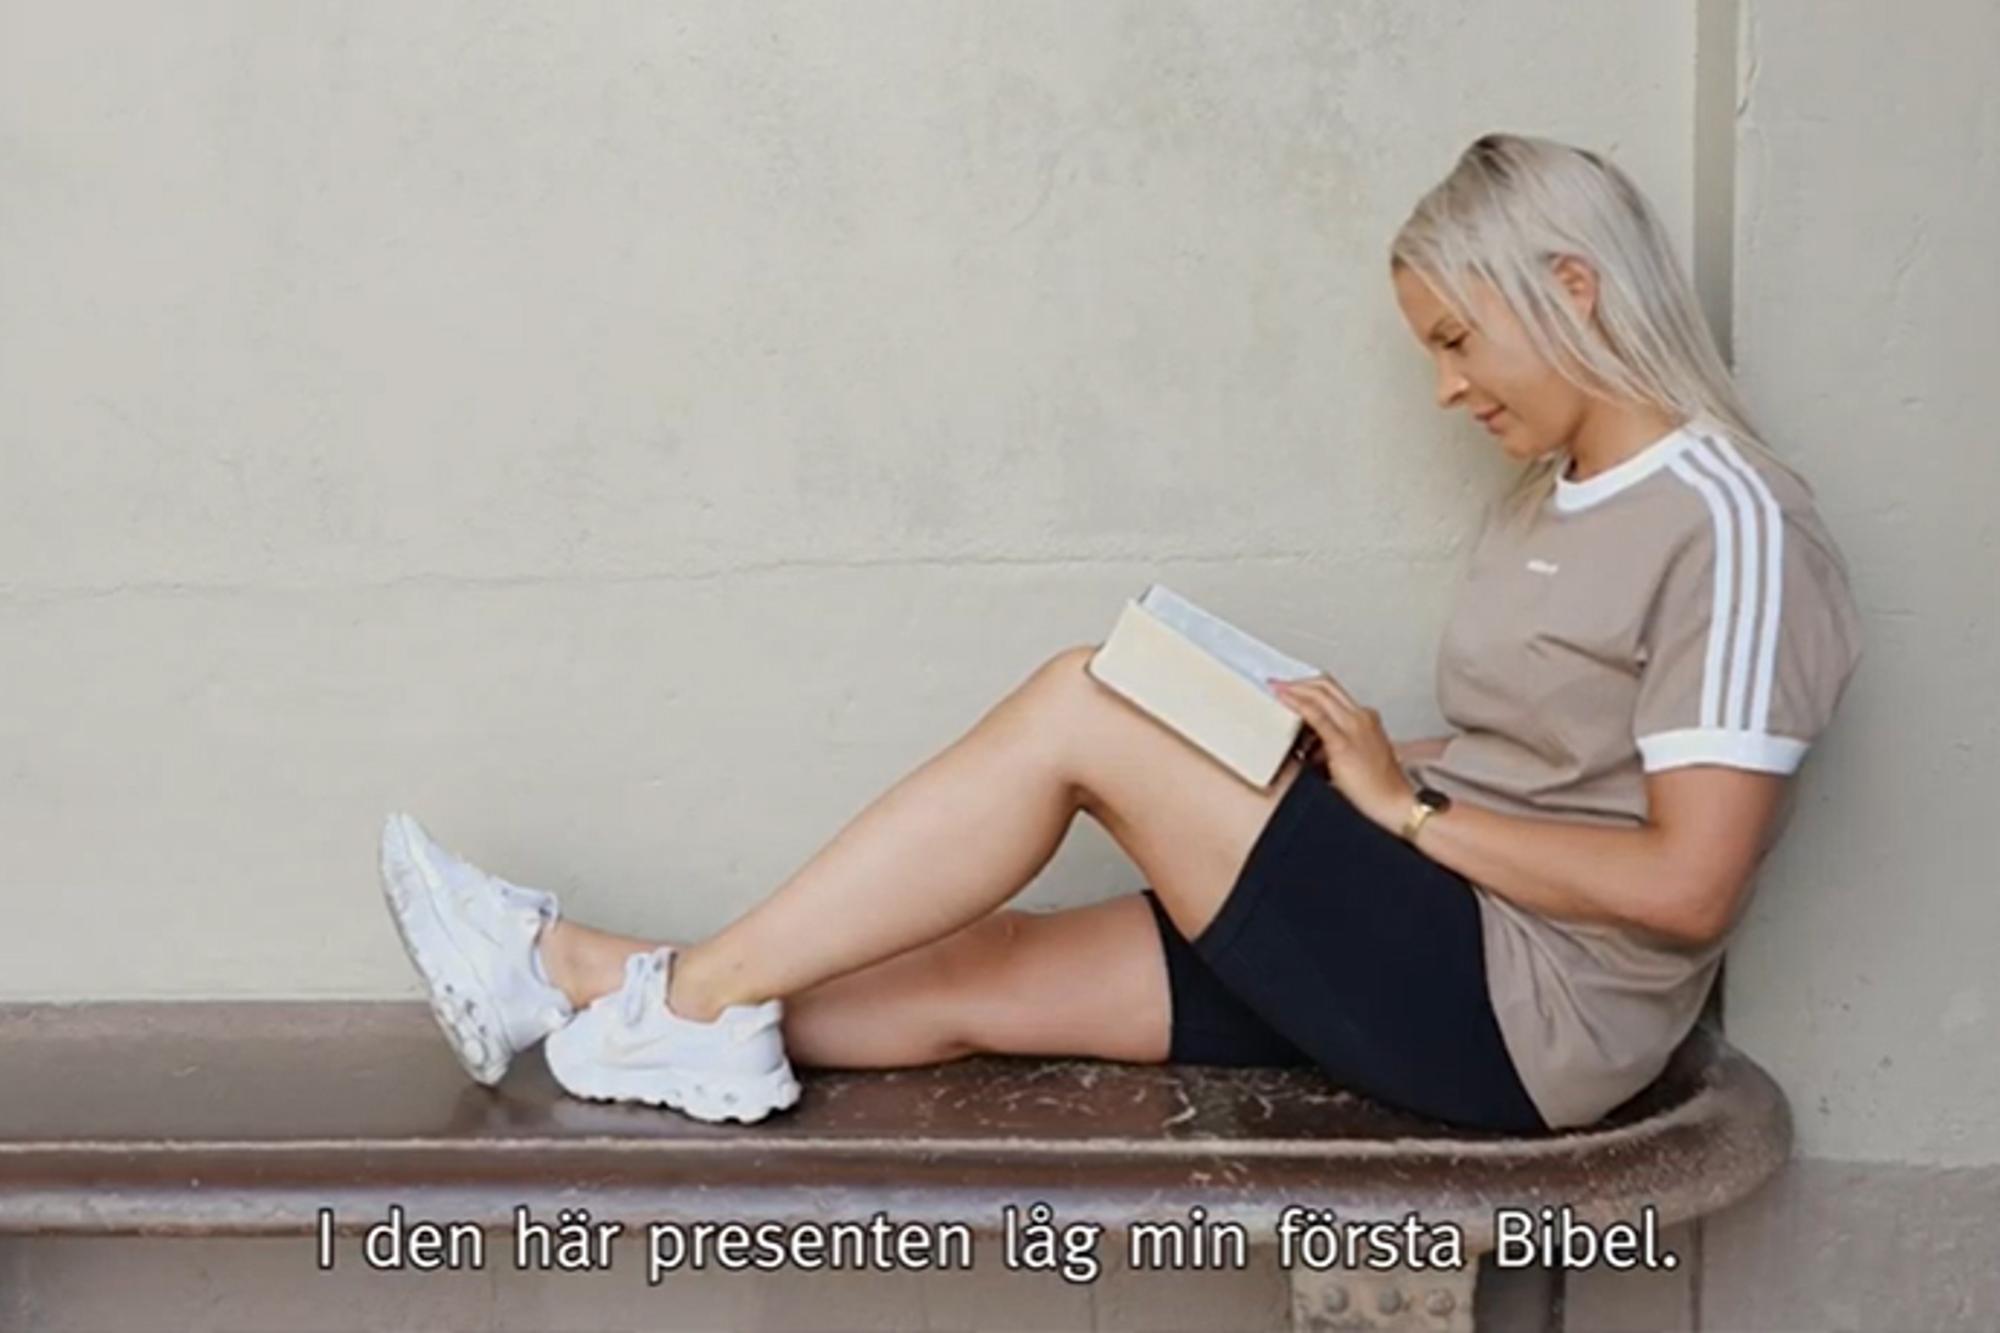 Carolina sitter på en bänk med ryggen lutad mot en vägg. I knät har hon en uppslagen bibel som hon läser i.